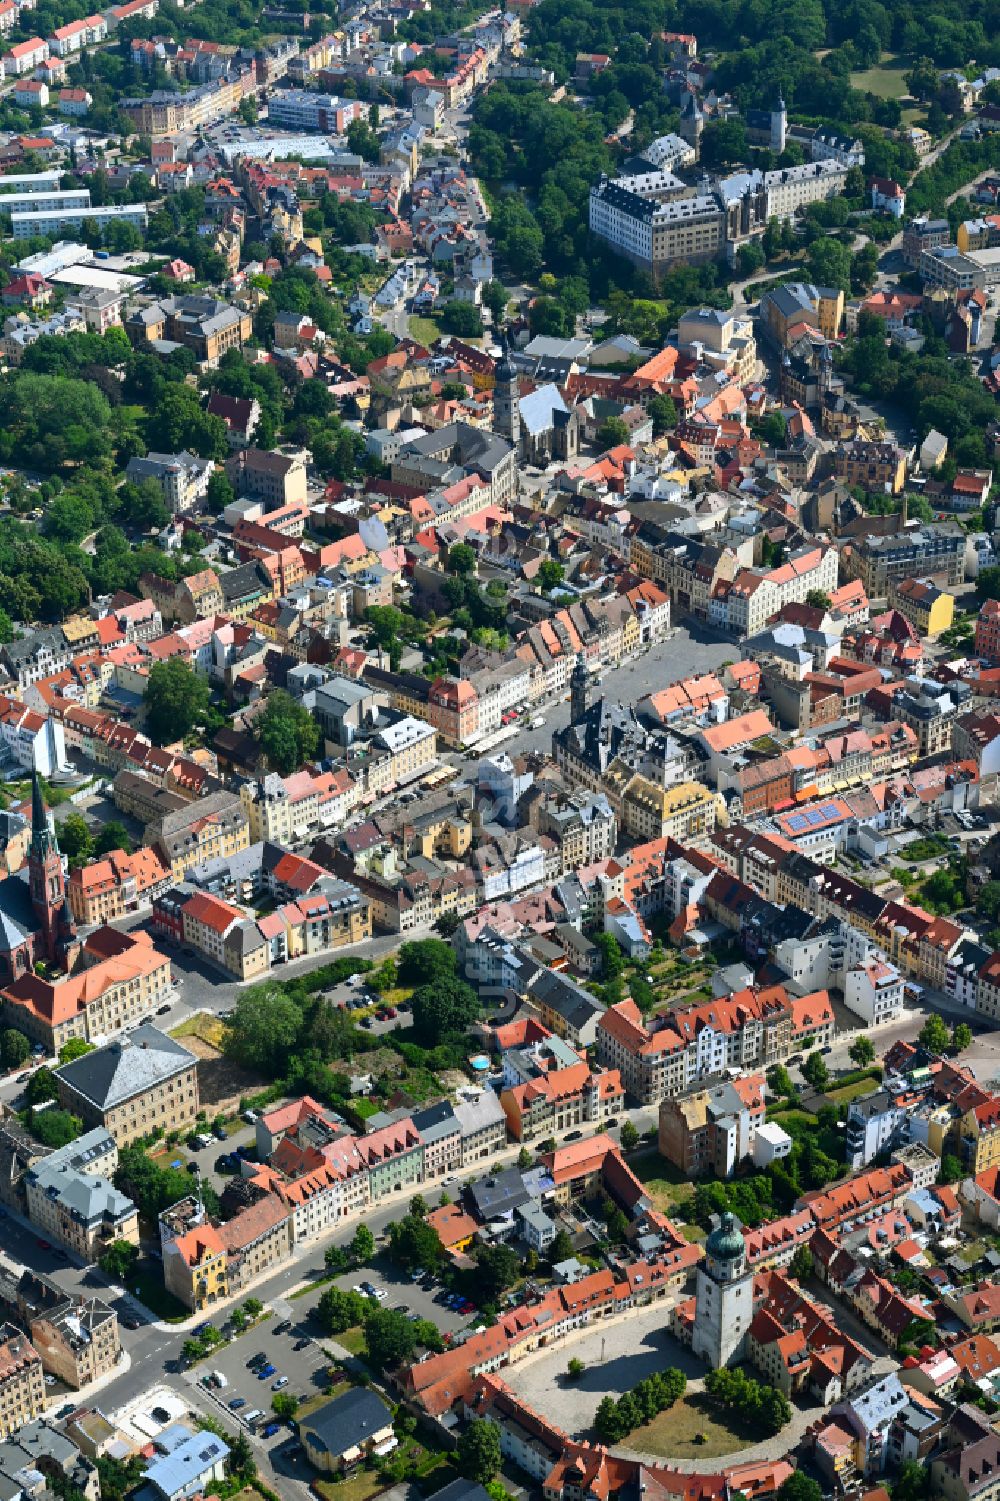 Luftbild Altenburg - Stadtzentrum im Innenstadtbereich in Altenburg im Bundesland Thüringen, Deutschland